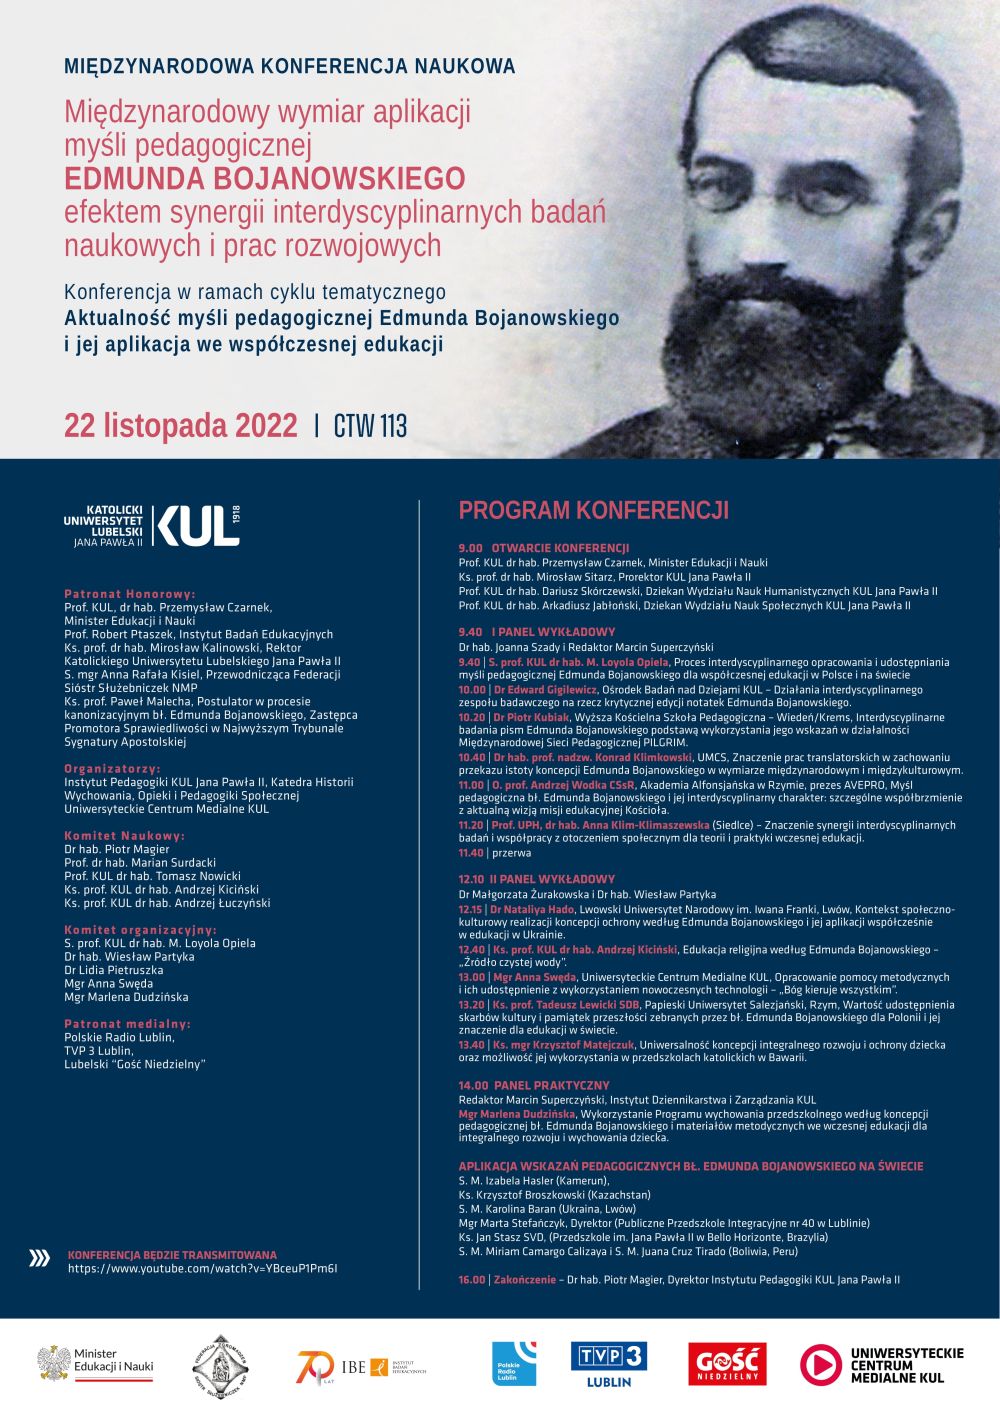 Konferencja „Międzynarodowy wymiar aplikacji myśli pedagogicznej Edmunda Bojanowskiego efektem synergii interdyscyplinarnych badań naukowych i prac rozwojowych”